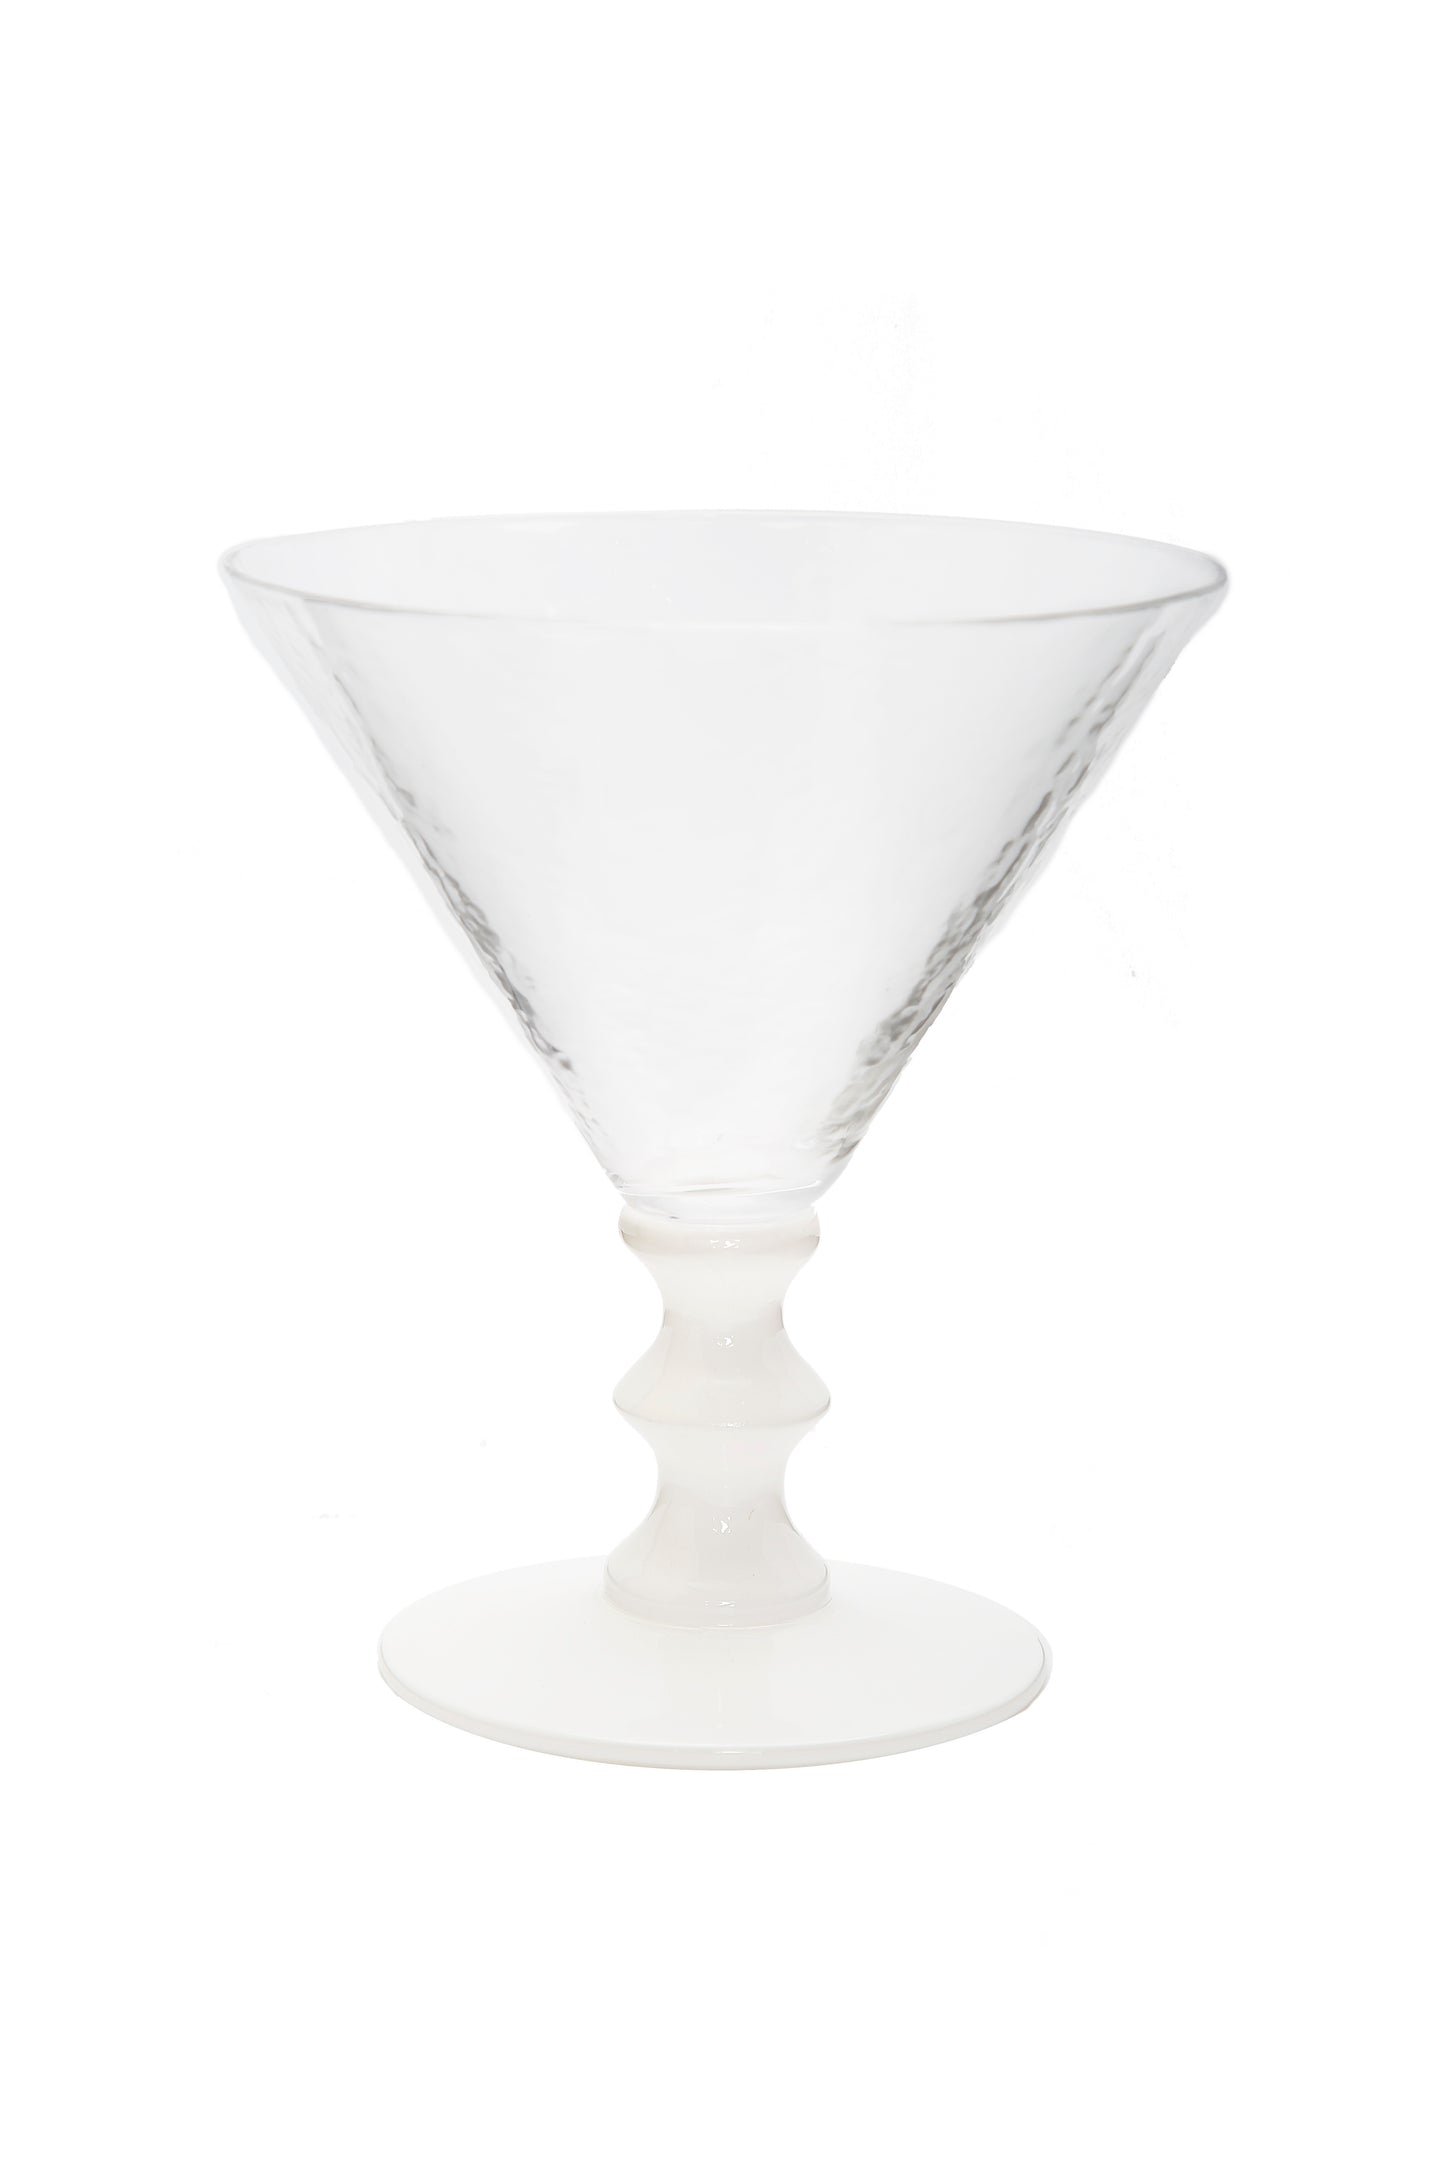 Set of 4 White Stemmed Martini Glasses